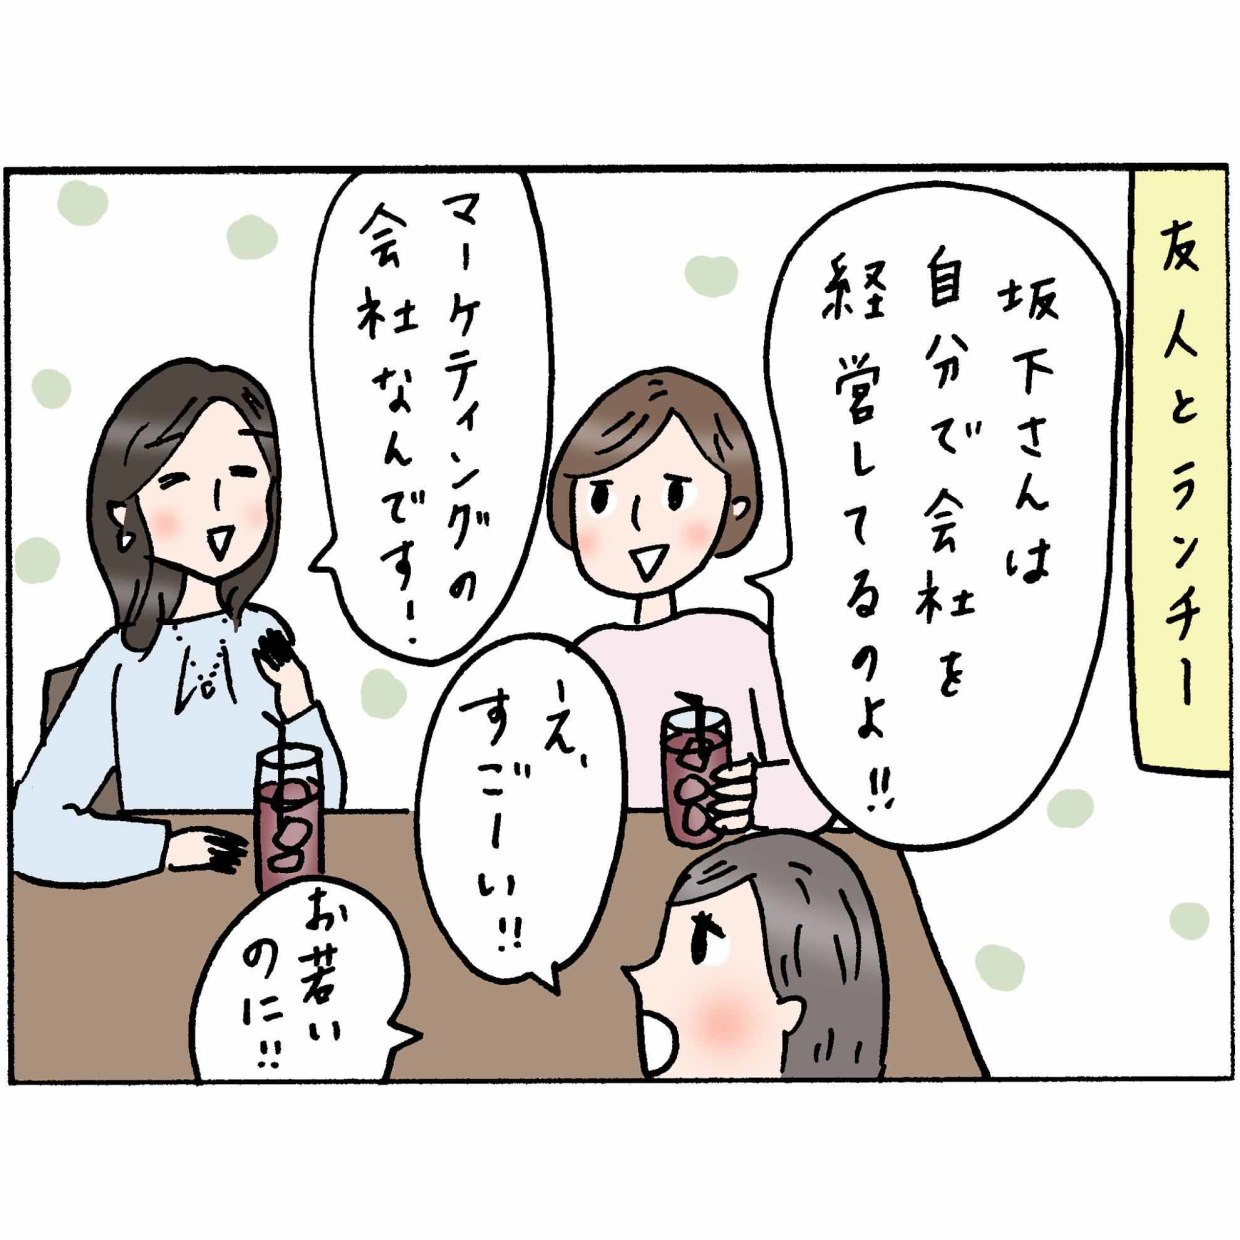 4コマ漫画 “佐藤くみ子”の日常